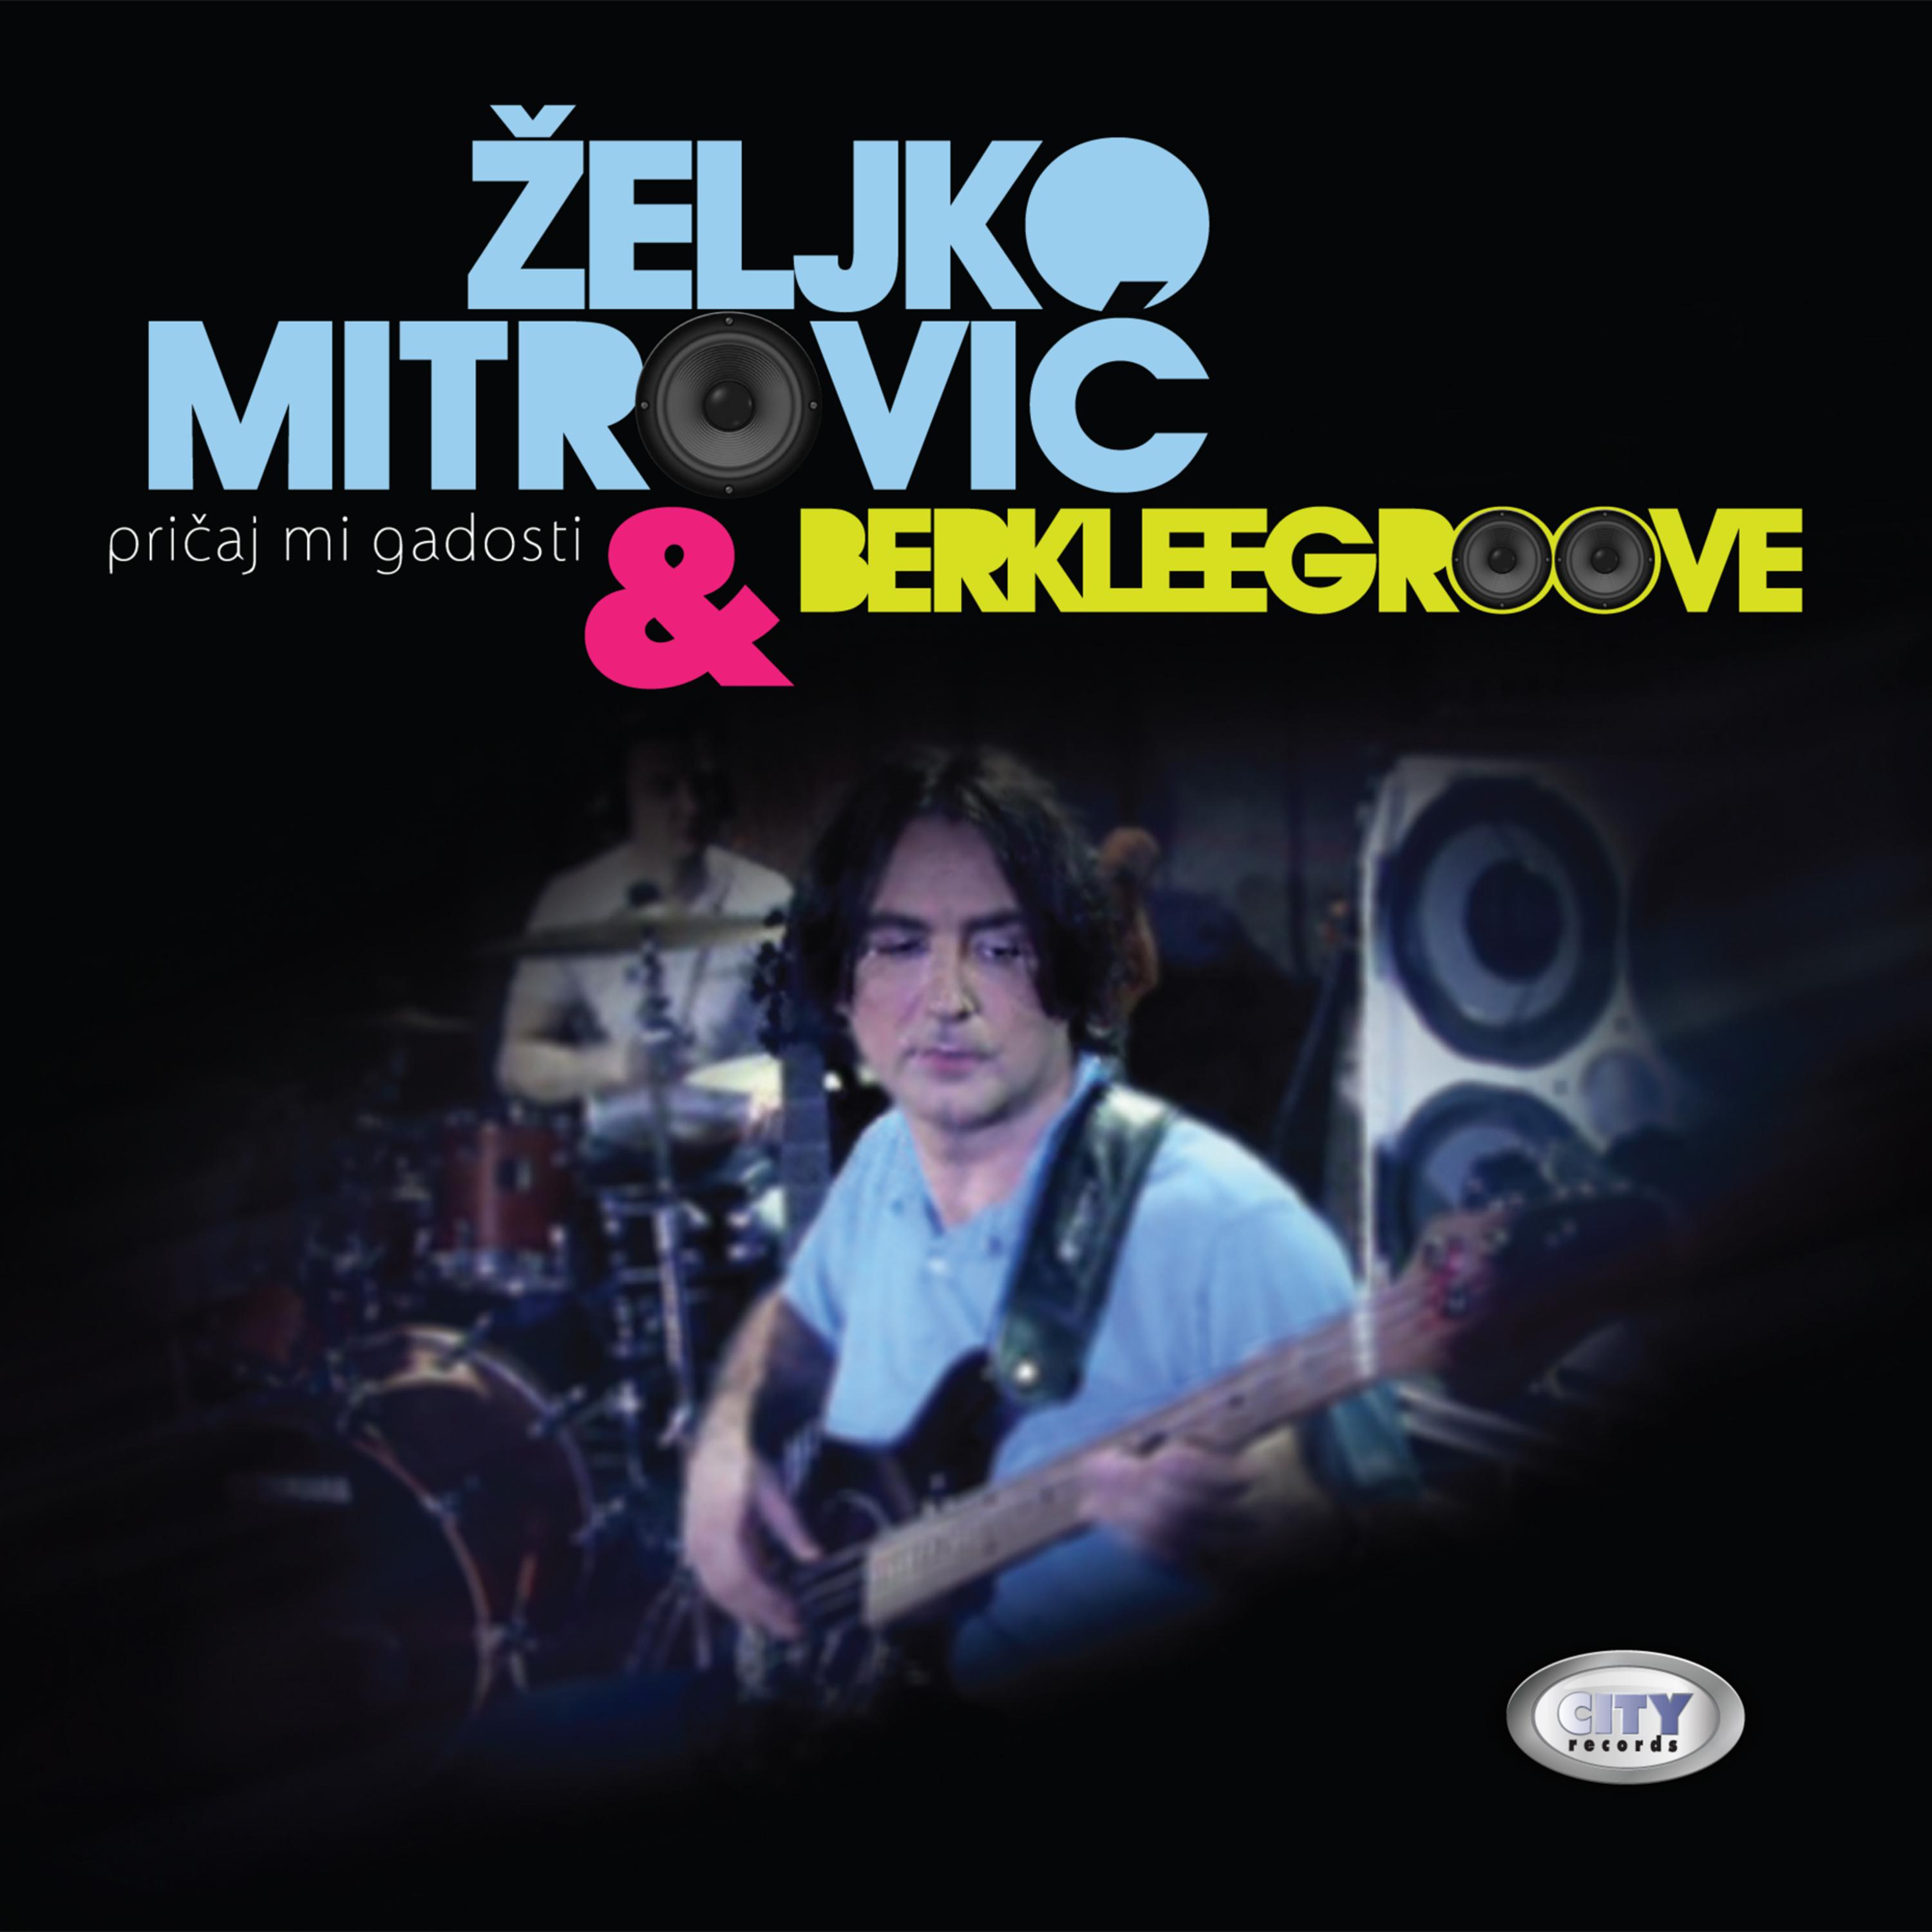 Zeljko Mitrovic & Berklee groove